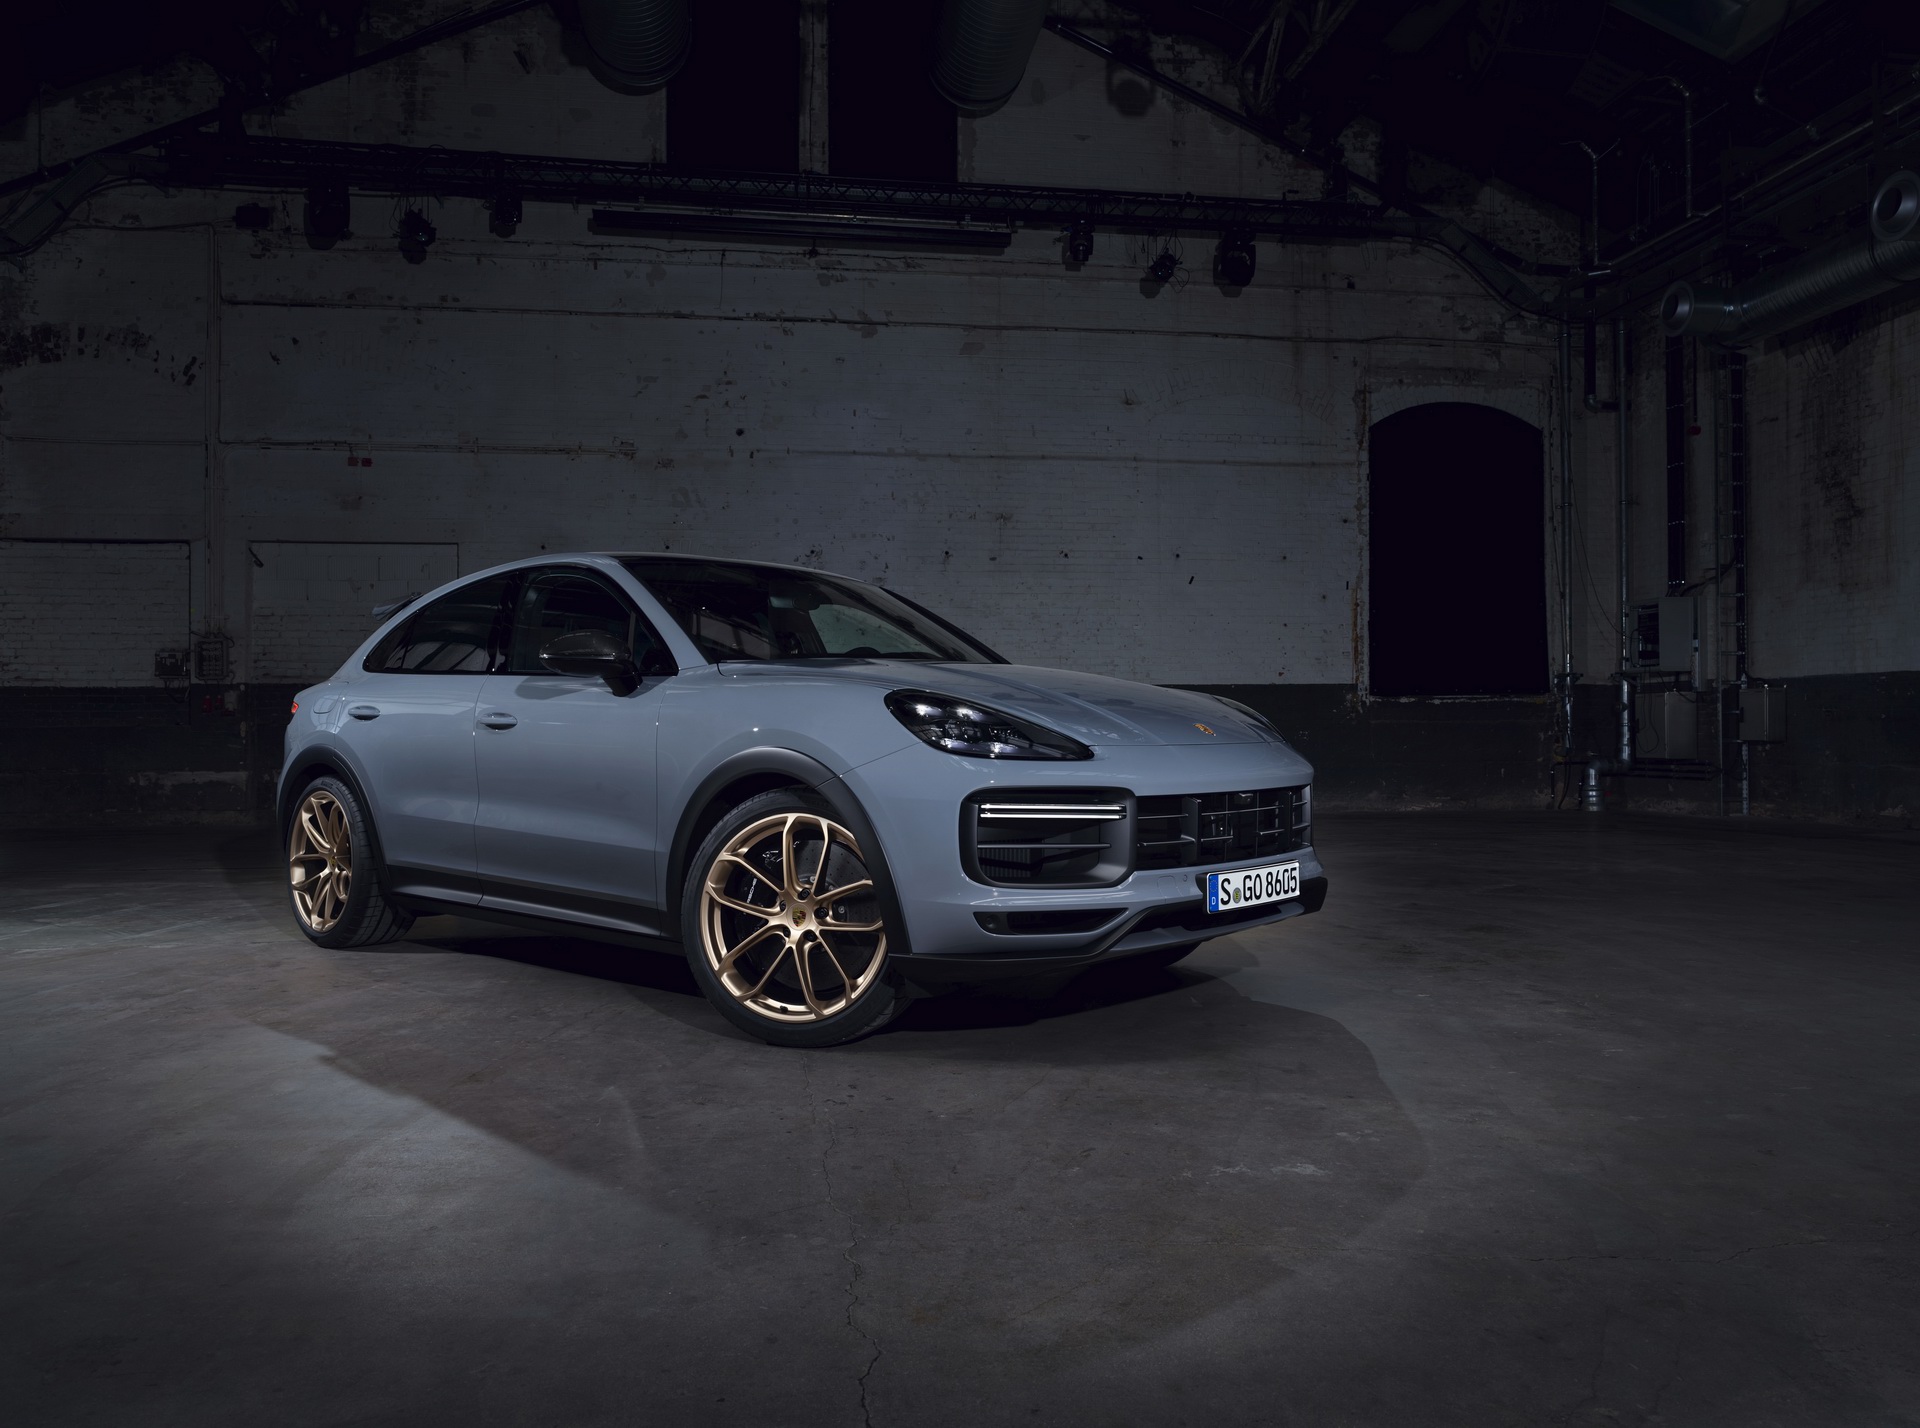 3 lý do Porsche nên bật đèn xanh dự án SUV lớn hơn Cayenne ngay và luôn - Ảnh 2.